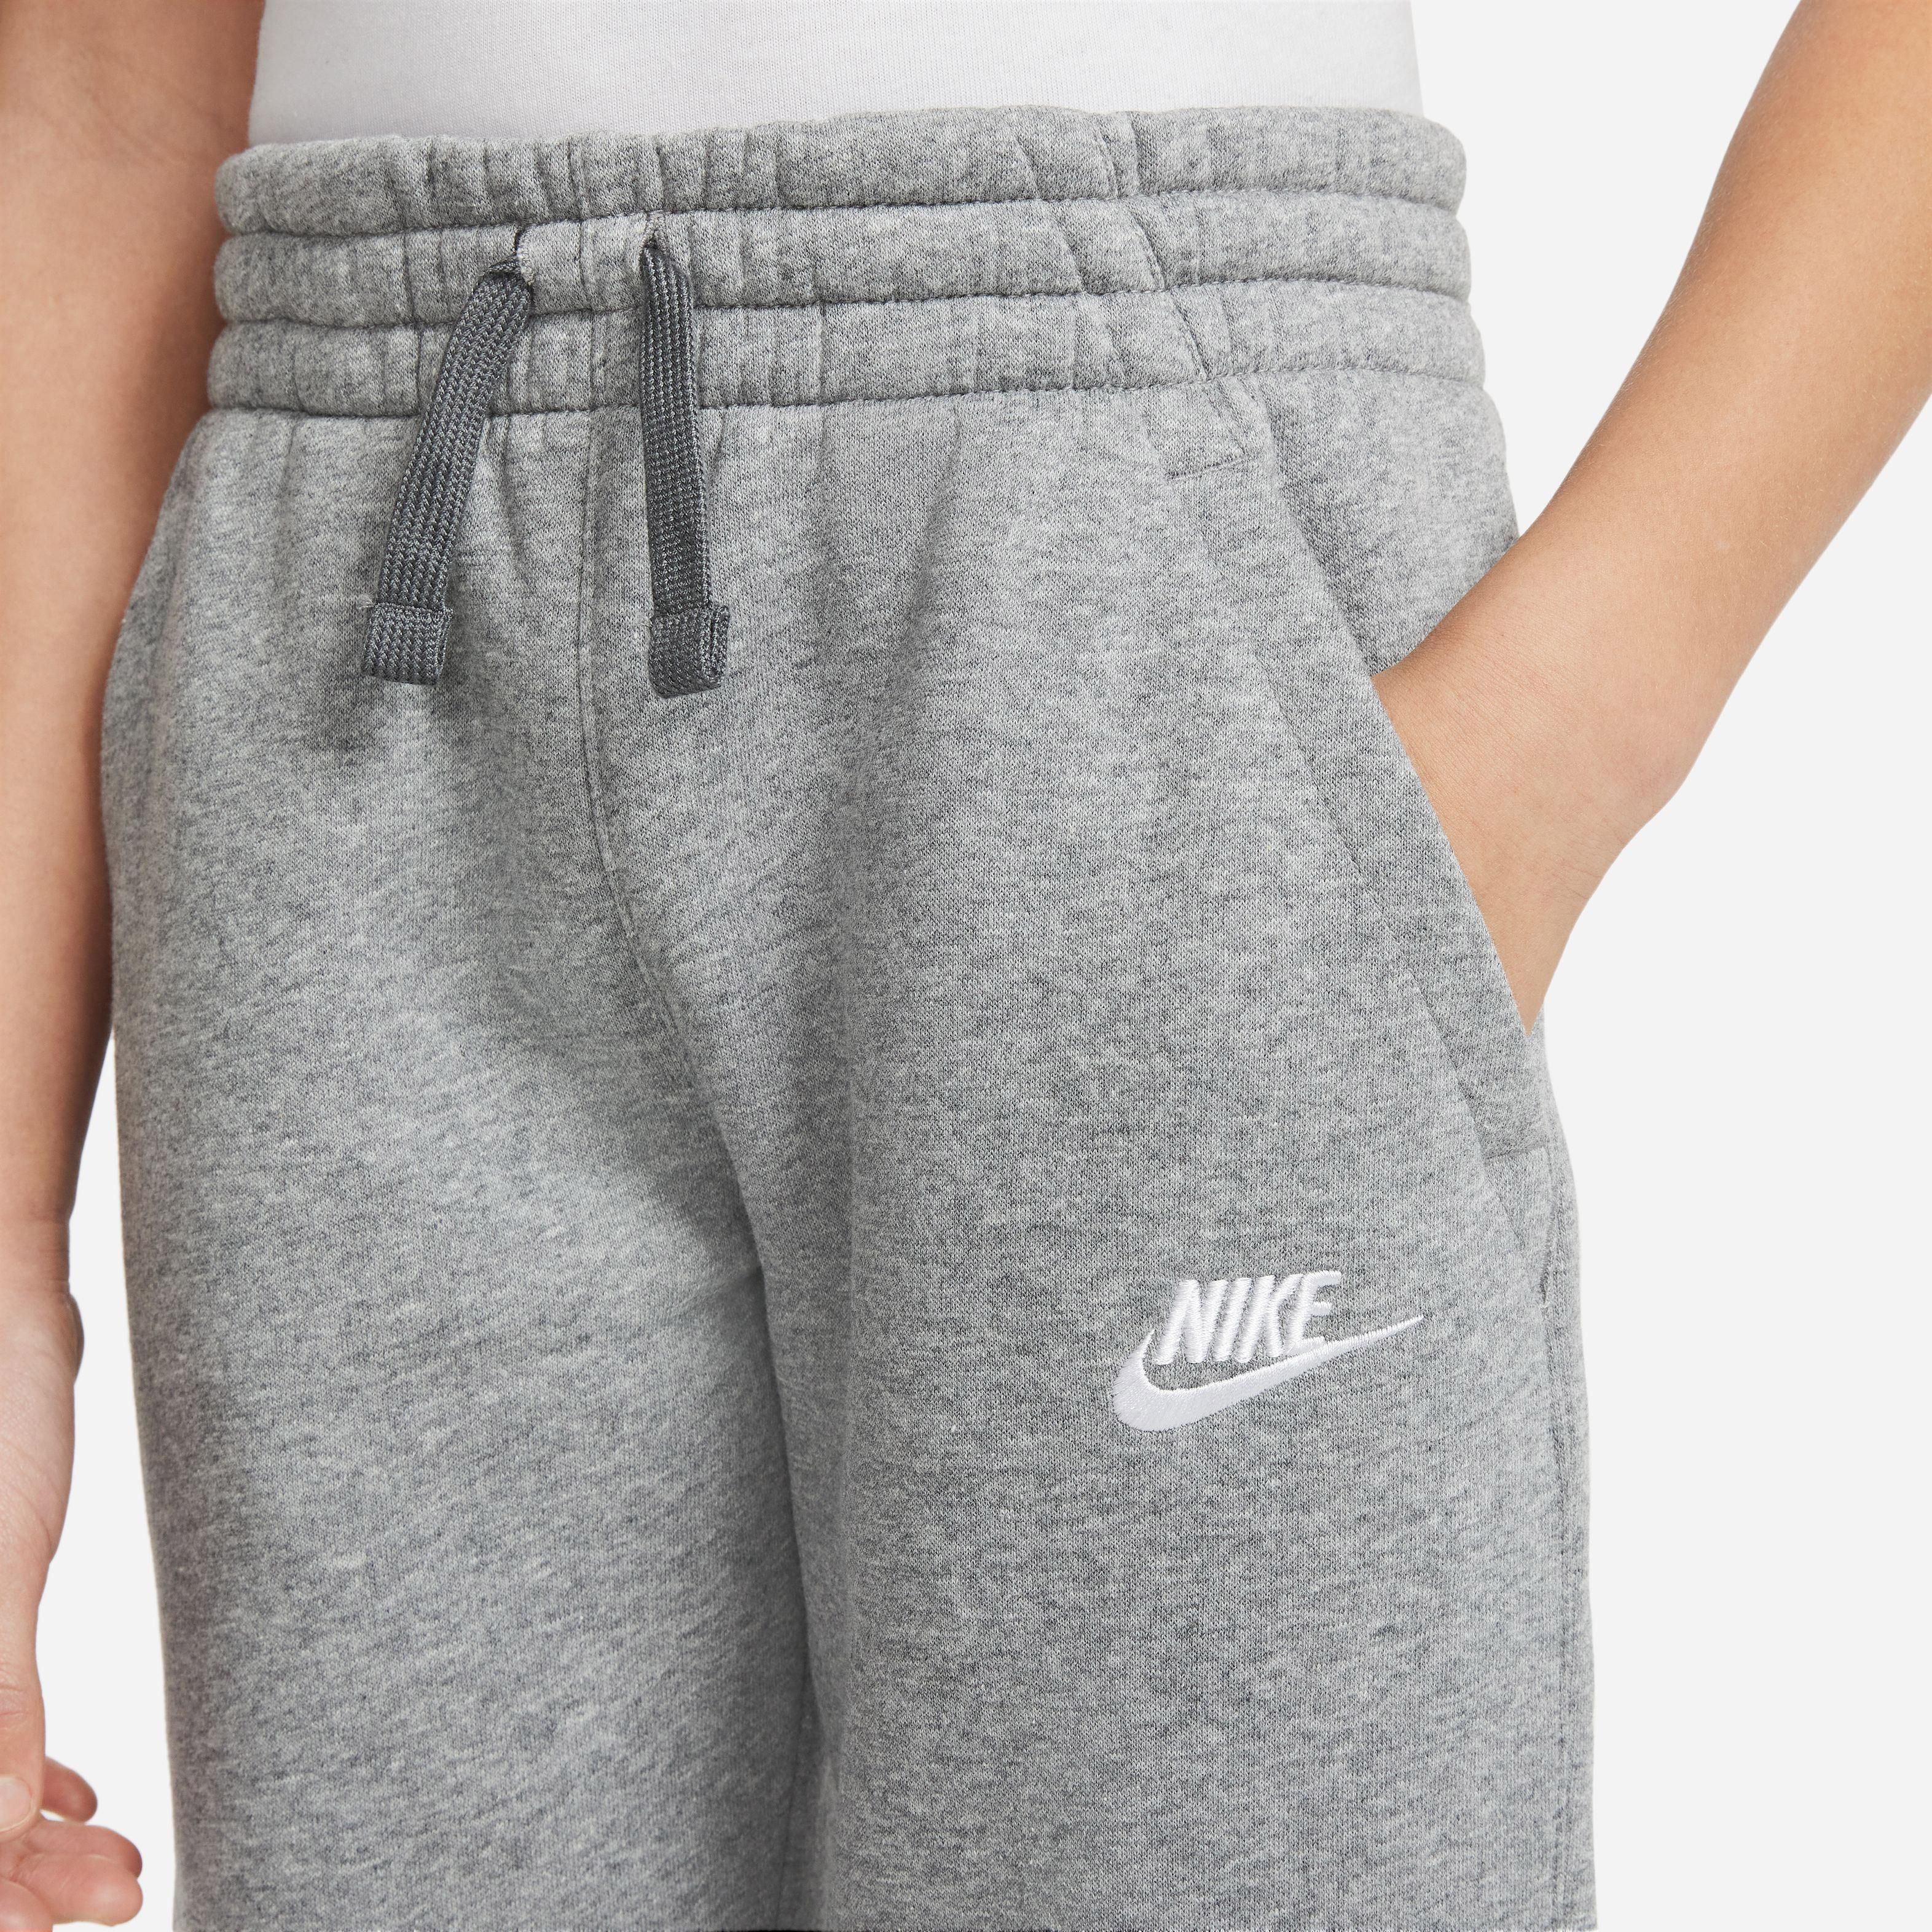 grey-white Jungen heather-dark SportScheck Nike CORE Shop Trainingsanzug kaufen von im carbon Online NSW